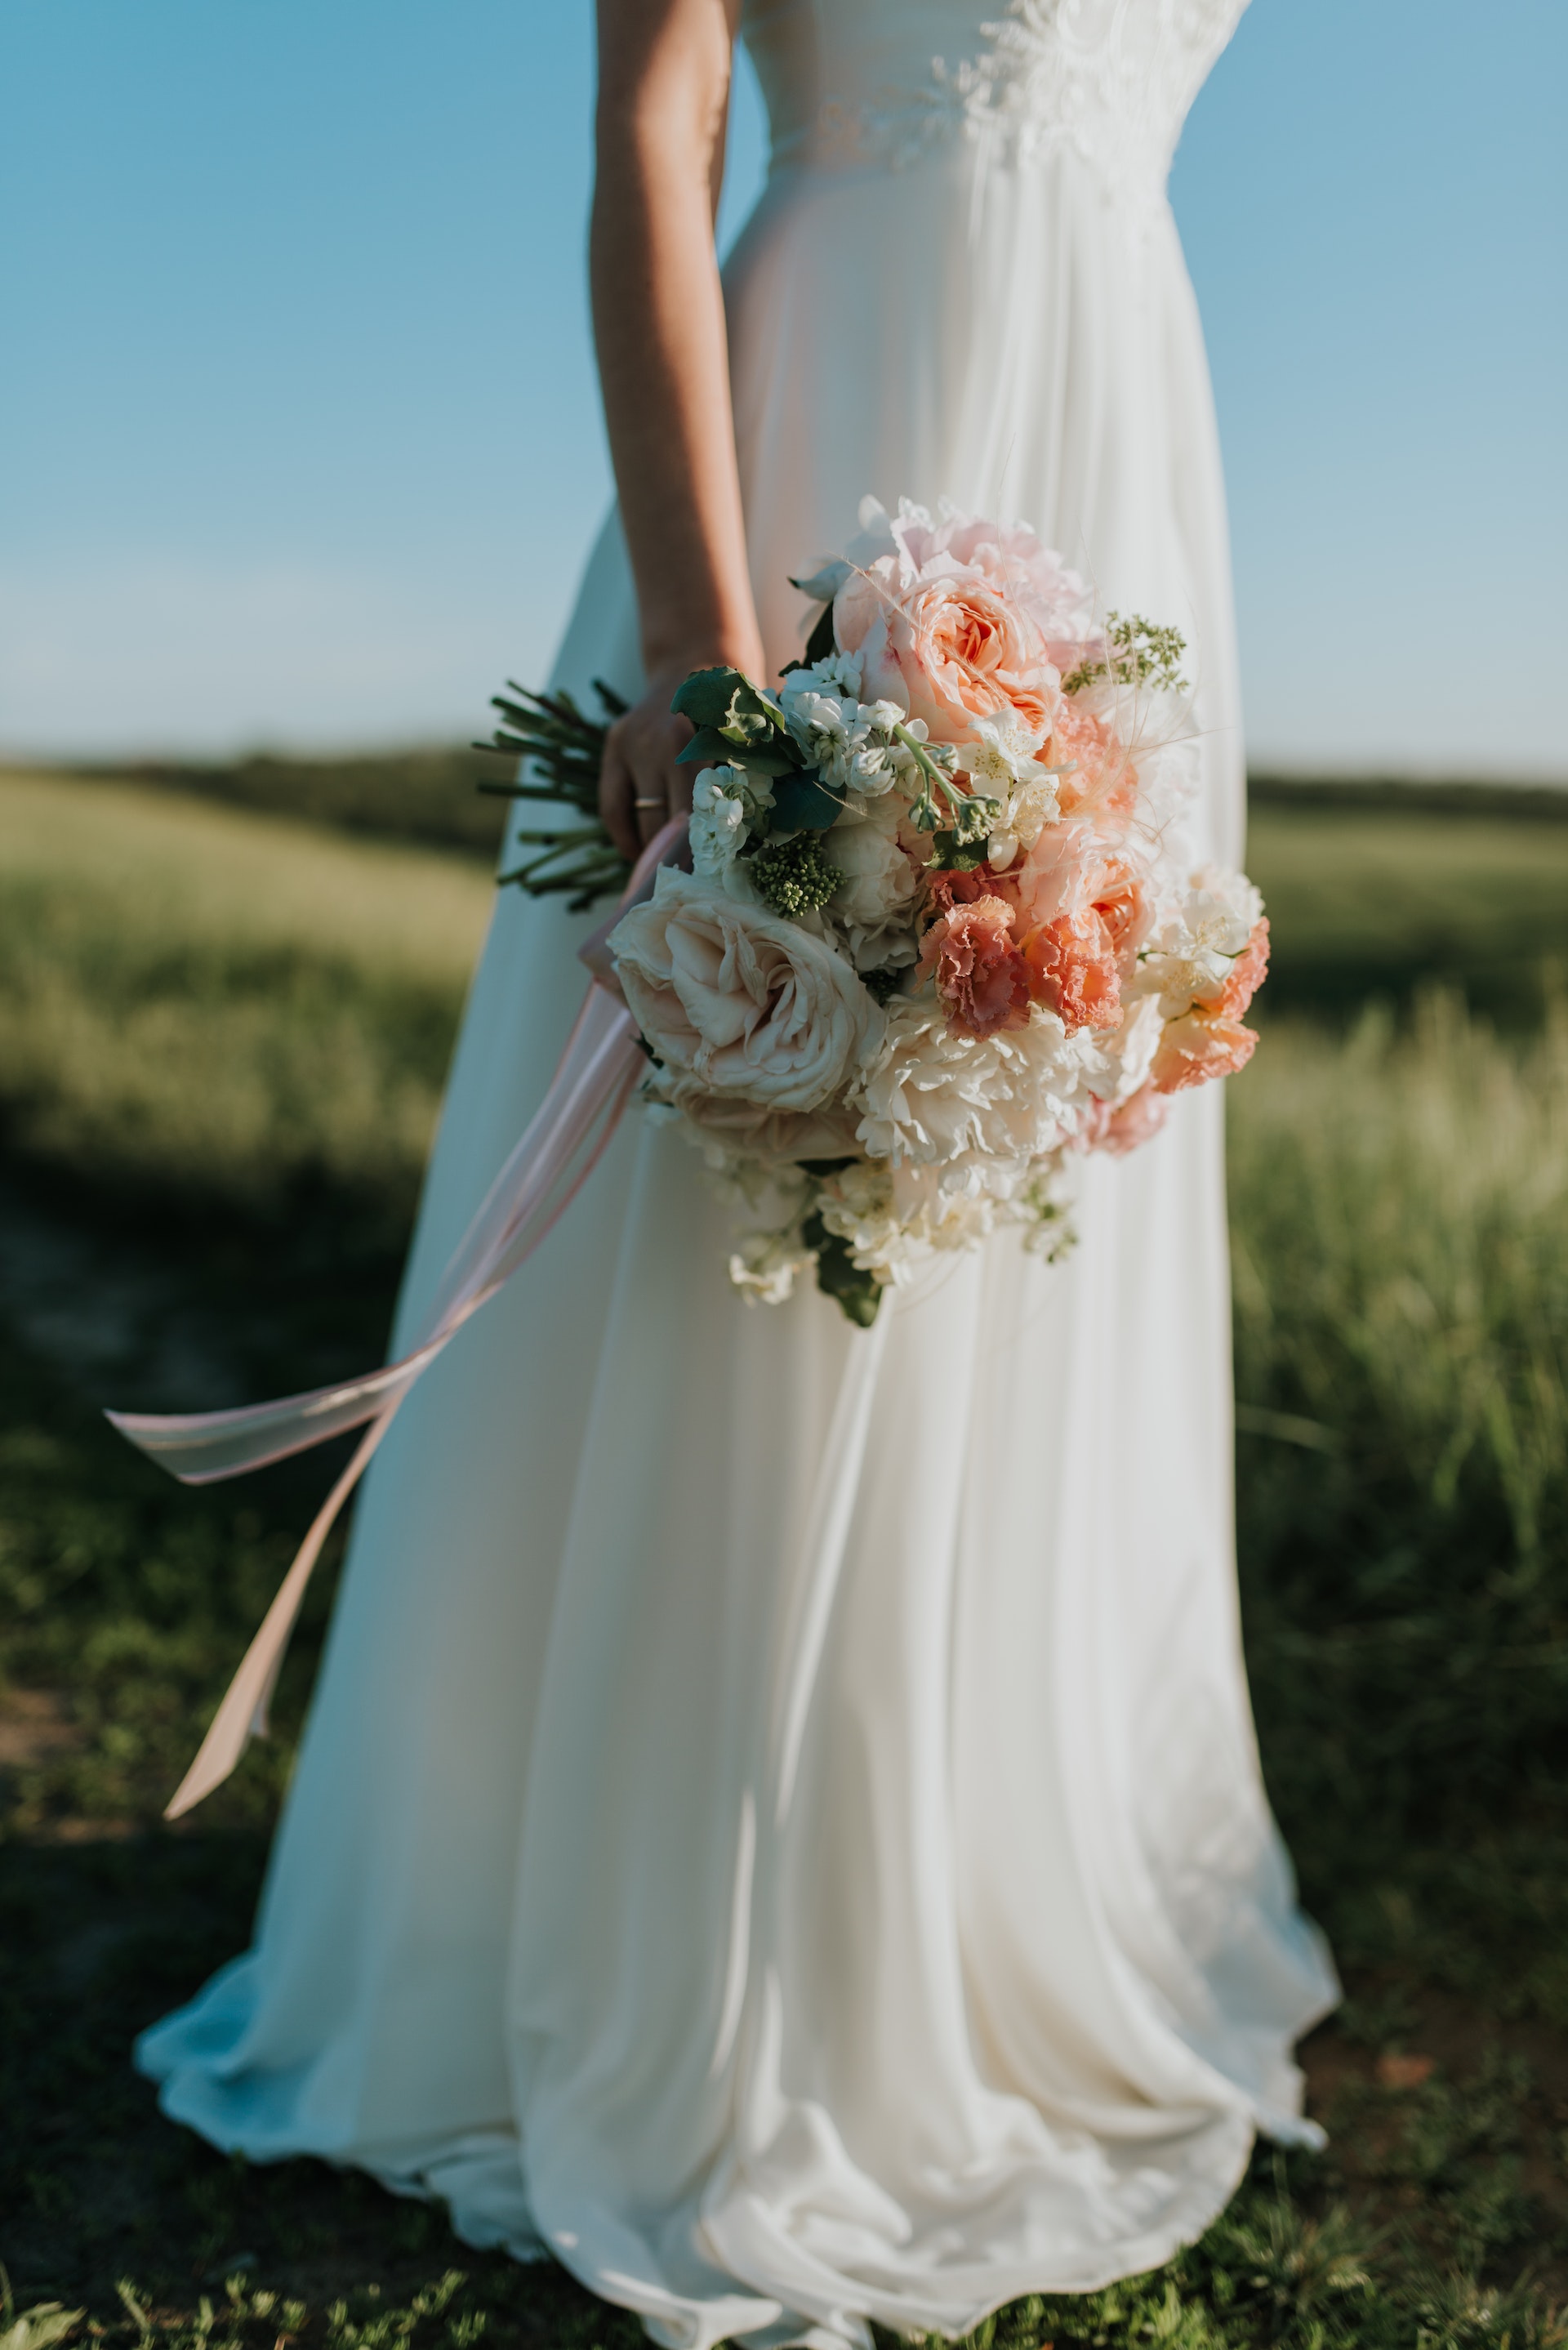 Une femme portant une robe de mariée blanche est photographiée tenant un bouquet de fleurs. | Source : Pexels